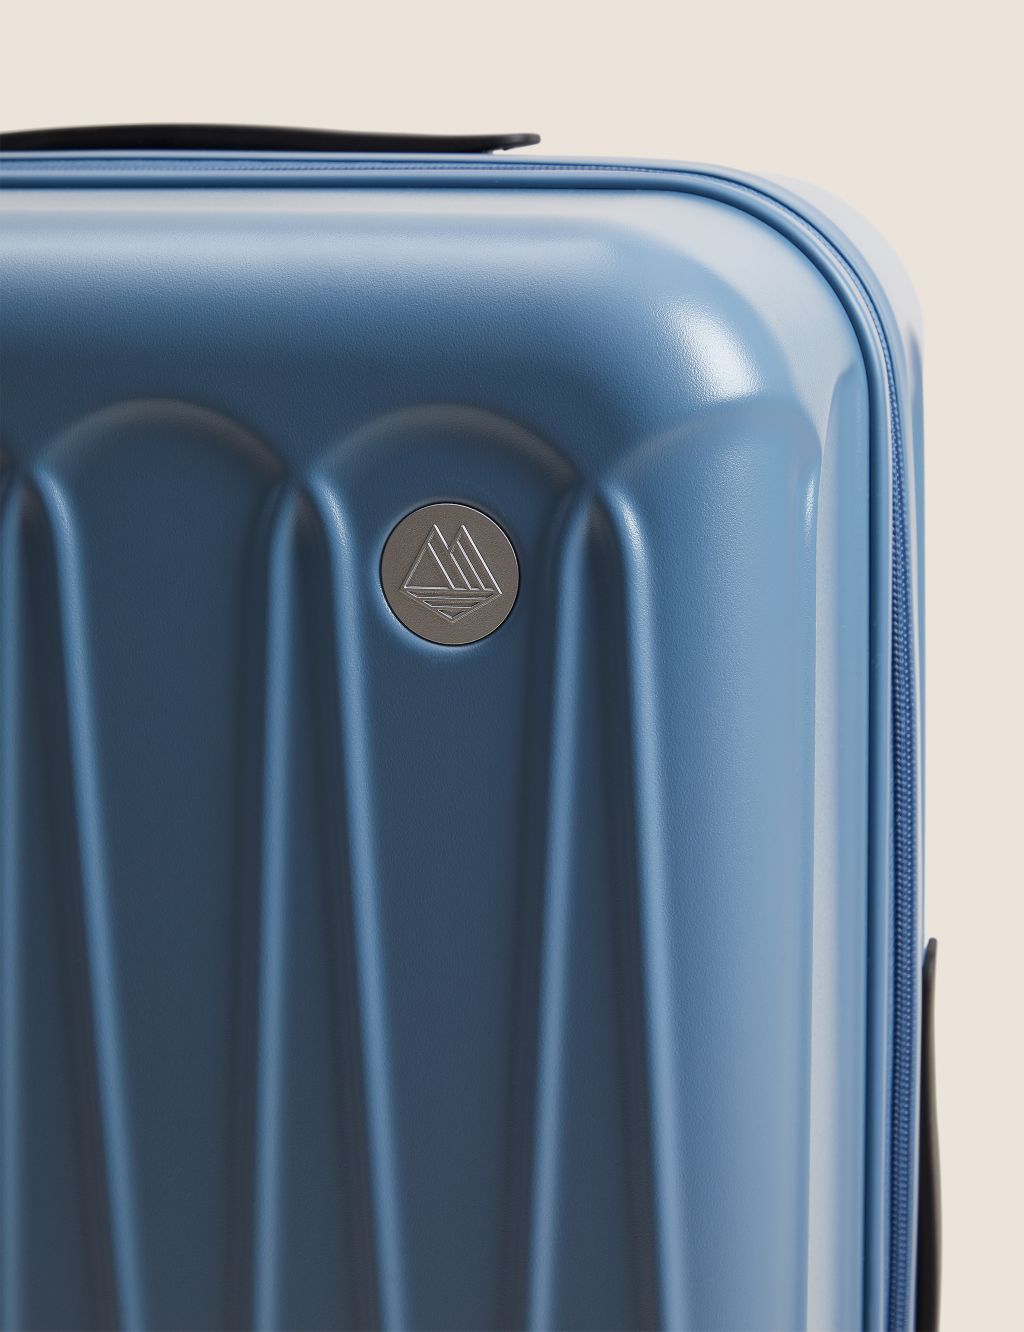 Amalfi 4 Wheel Hard Shell Medium Suitcase image 3